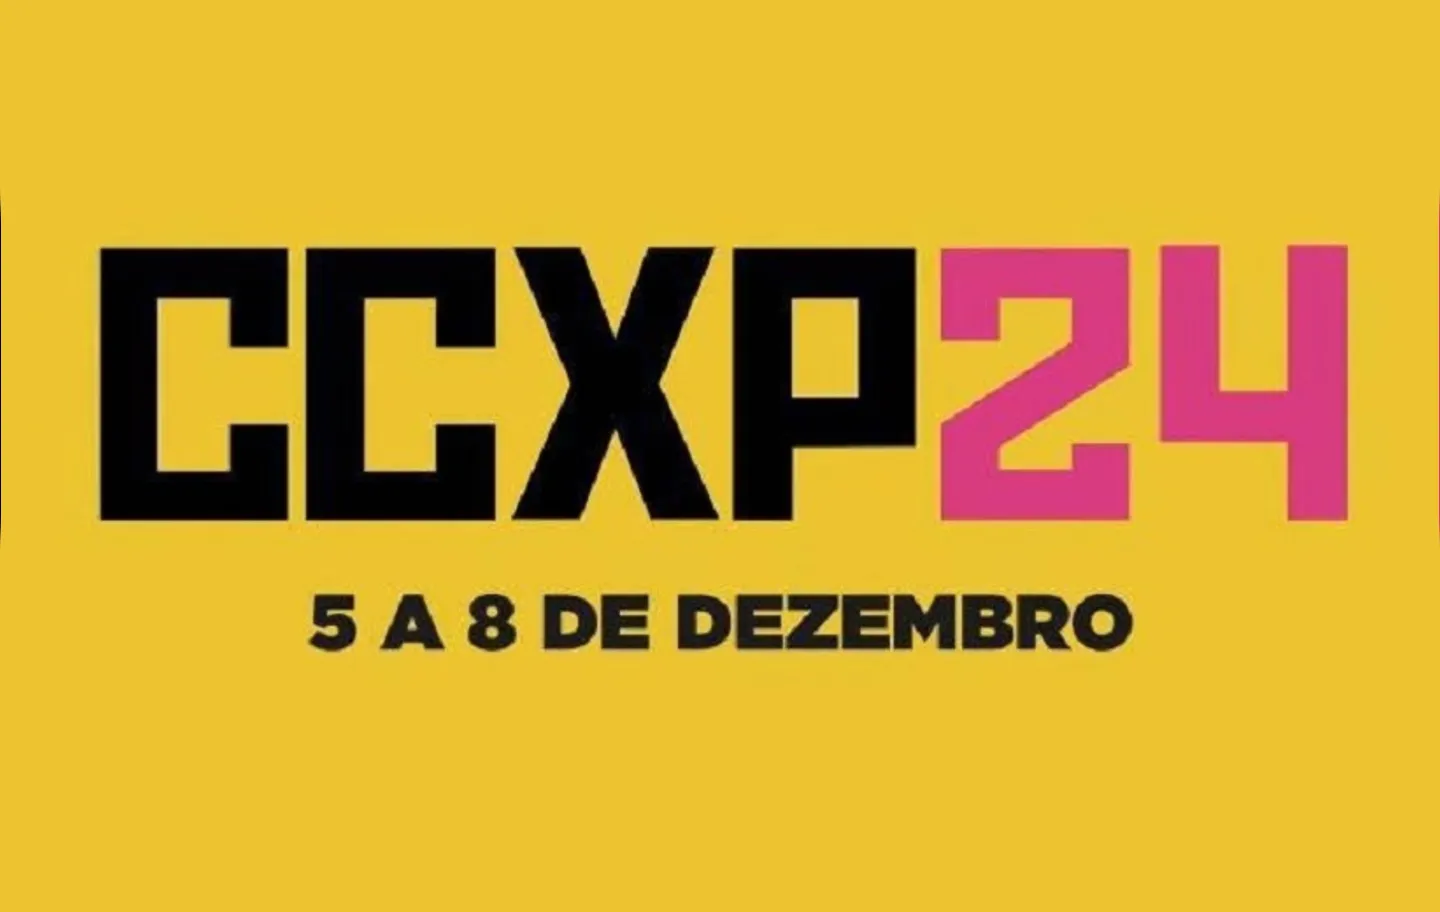 CCXP24 anuncia Heineken®️ como primeira patrocinadora do festival POP CYBER